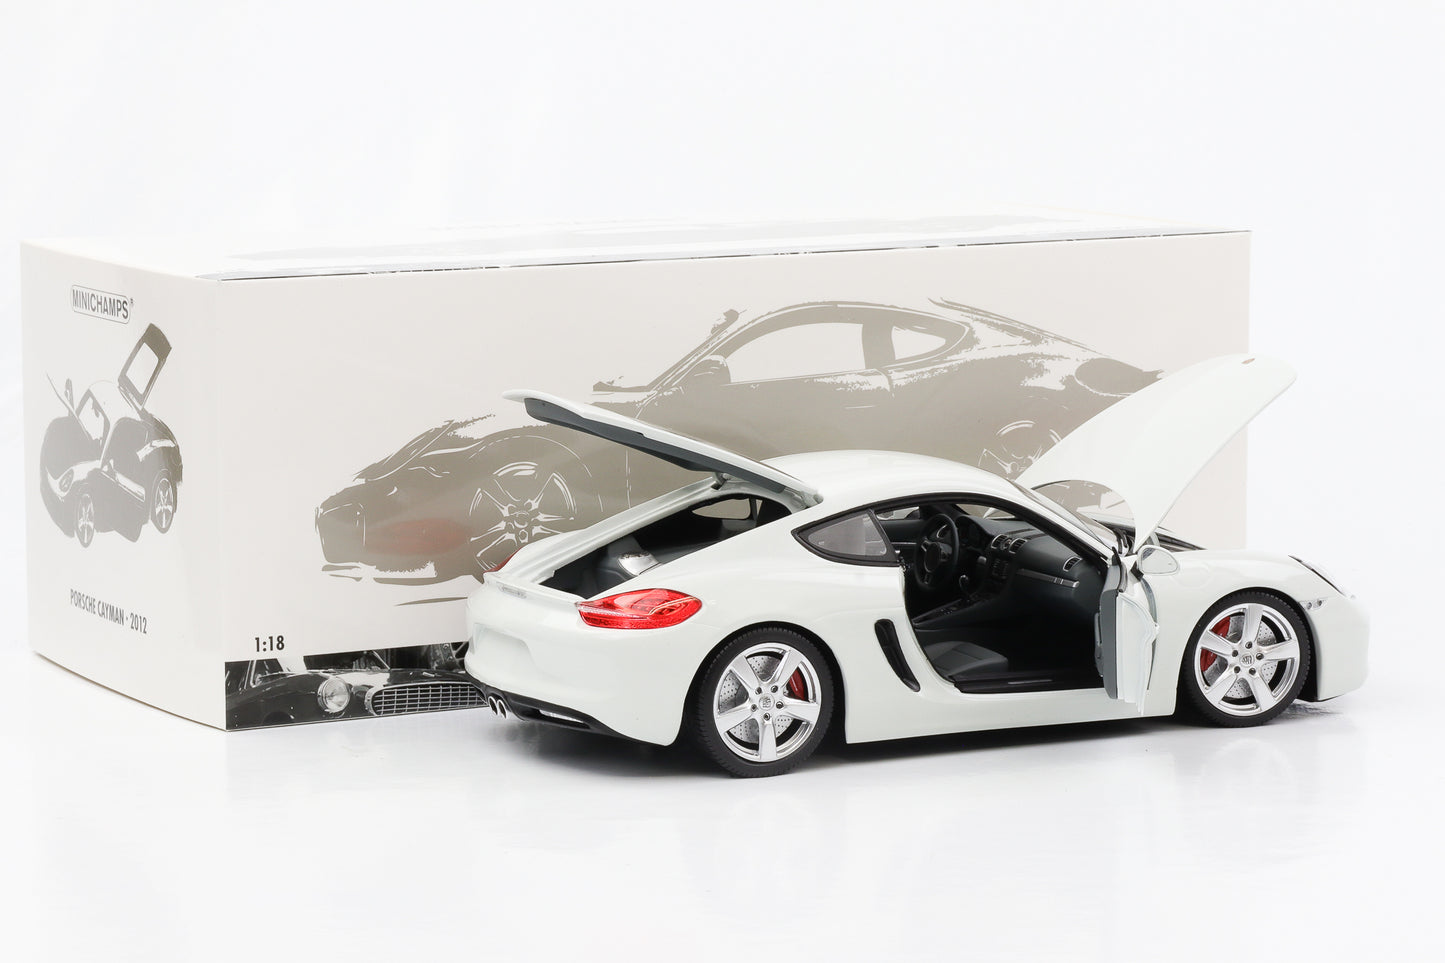 Apertura pressofusa della Porsche Cayman S 2012 Minichamps bianca in scala 1:18